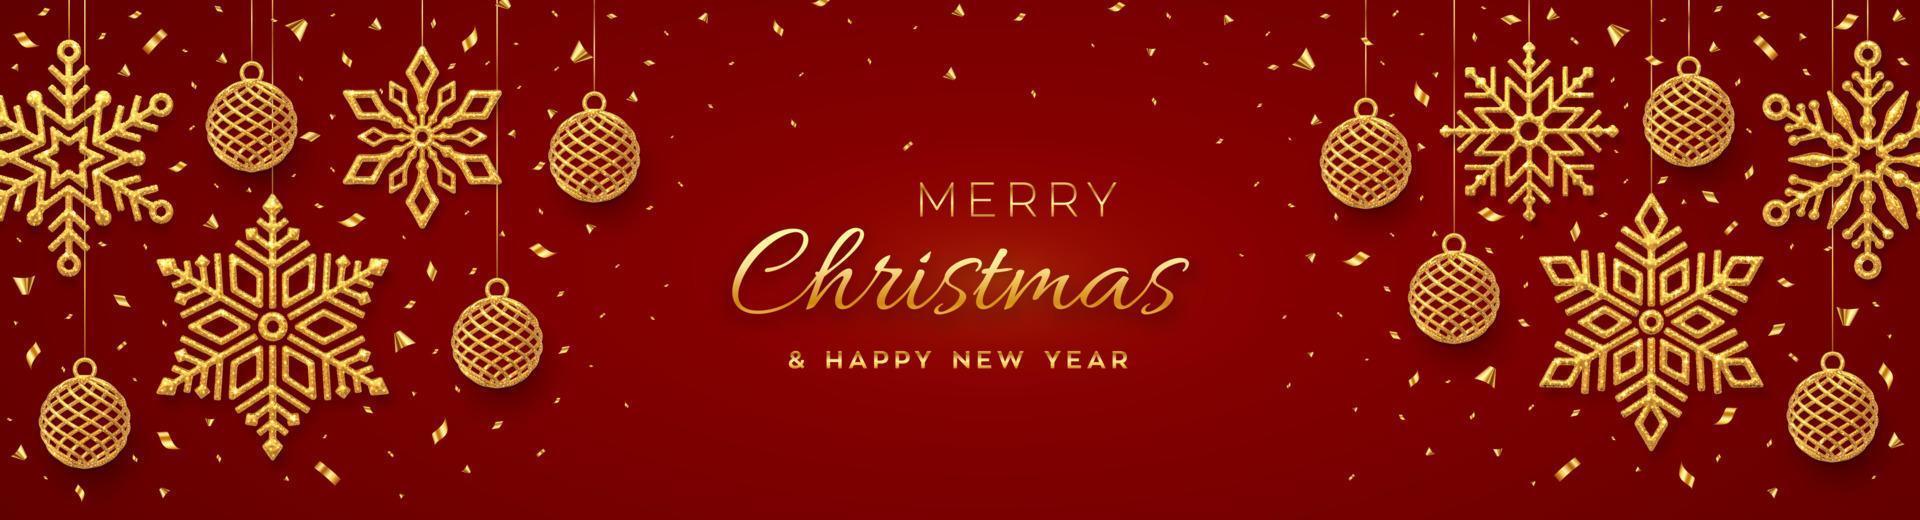 jul röd bakgrund med hängande lysande gyllene snöflingor och bollar. semester xmas och nyår affisch, webbbanner. god jul gratulationskort. vektor illustration.